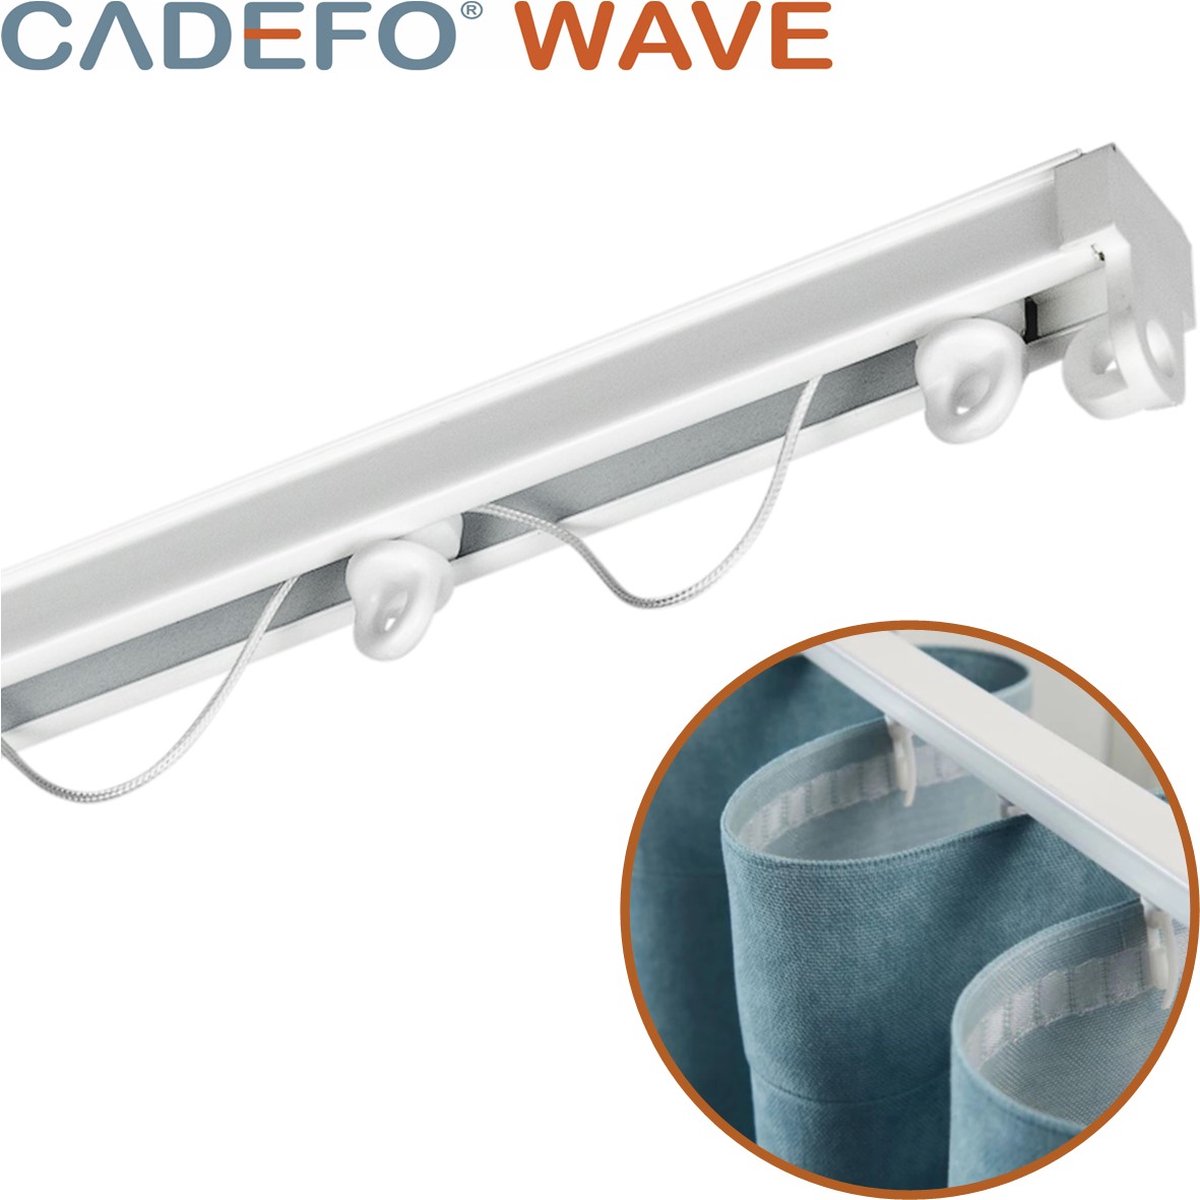 CADEFO WAVE (151 - 200 cm) Gordijnrails - Compleet op maat! - UIT 1 STUK - Leverbaar tot 6 meter - Plafondbevestiging - Lengte 169 cm